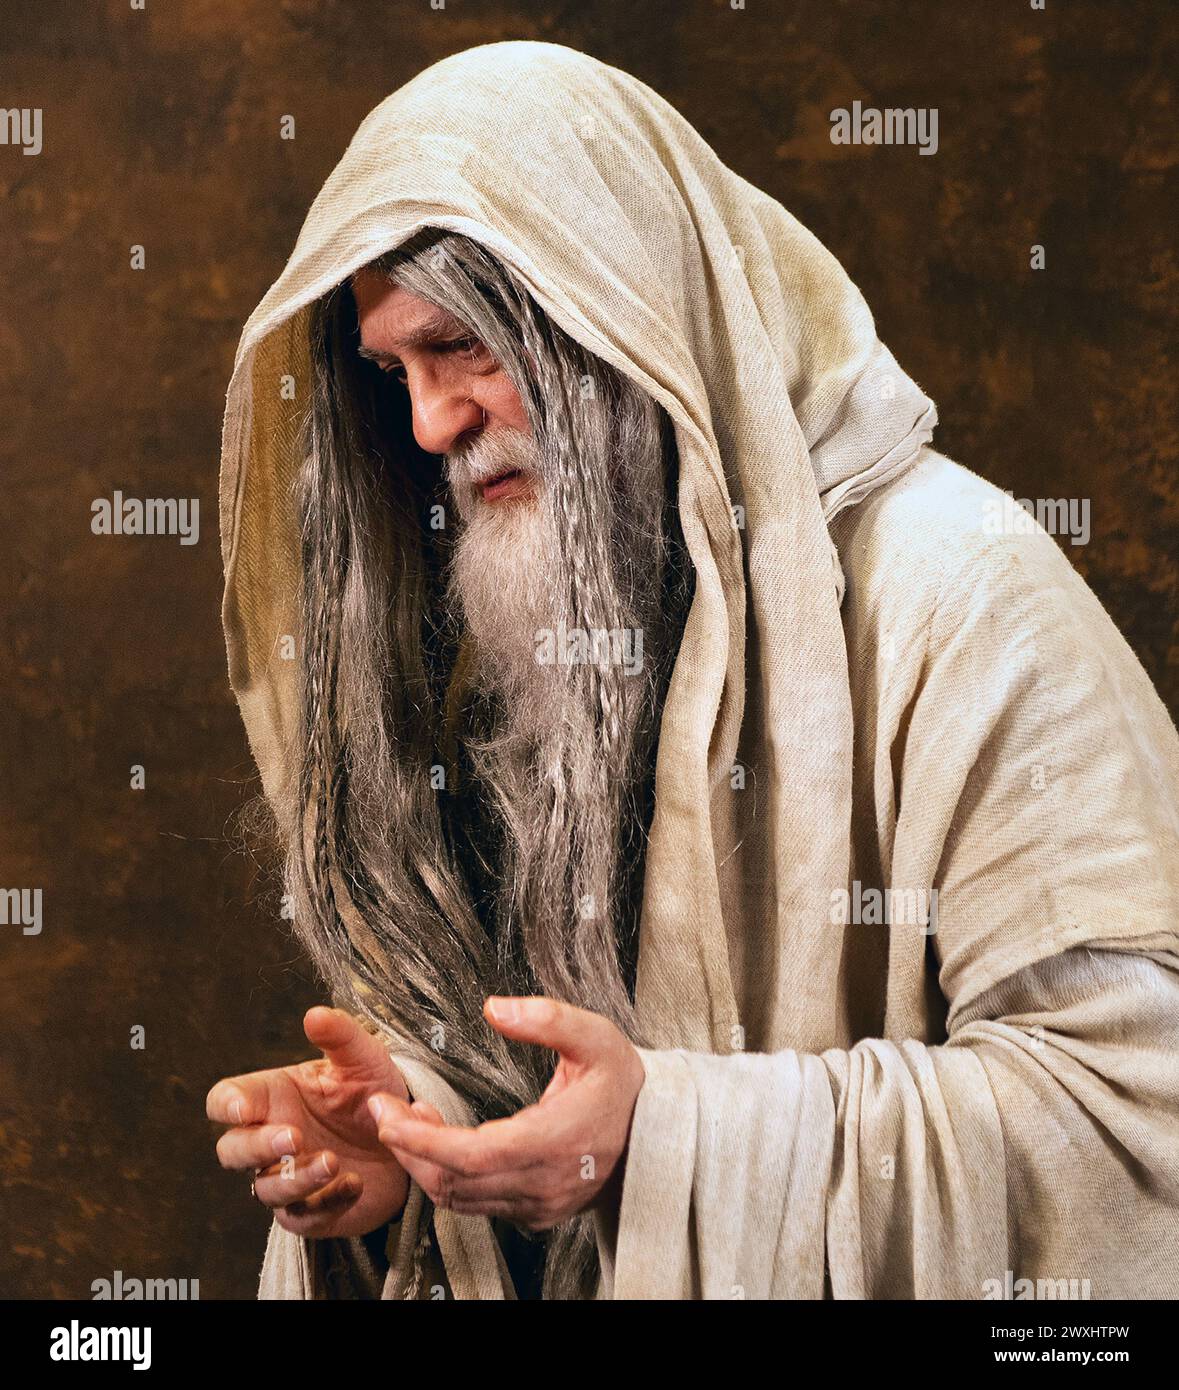 Porträt eines alten Mannes mit einem Bart und langen Haaren, gekleidet in einem hellbraunen kapuzenumhang. Mark Dunn / Mark Dunn Fotografie Stockfoto